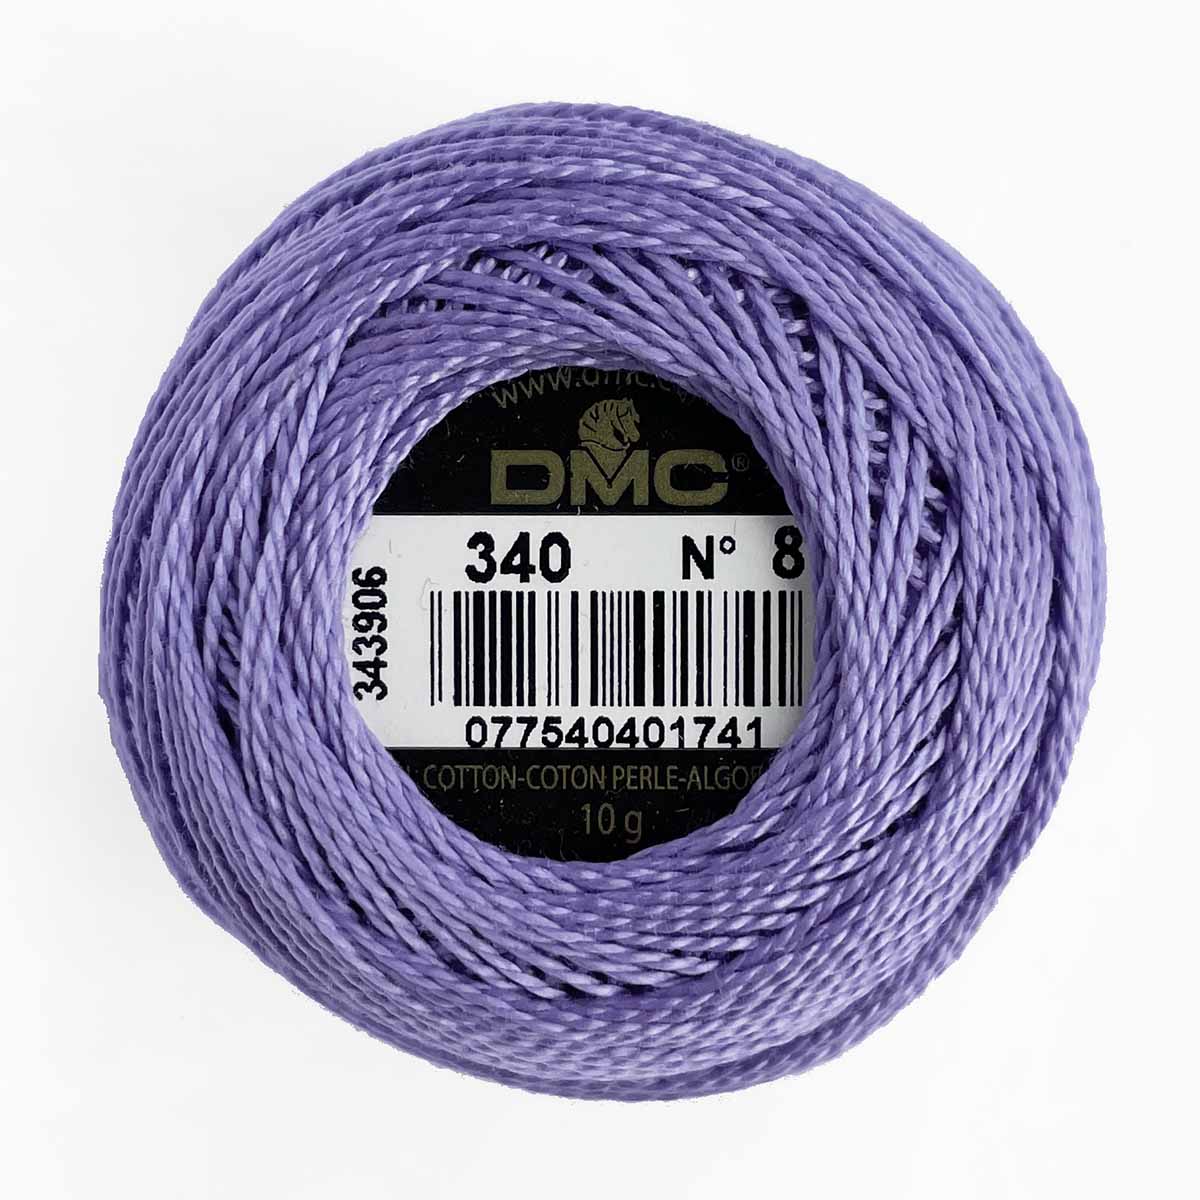 DMC 340: Medium Blue Violet (size 8 perle cotton)